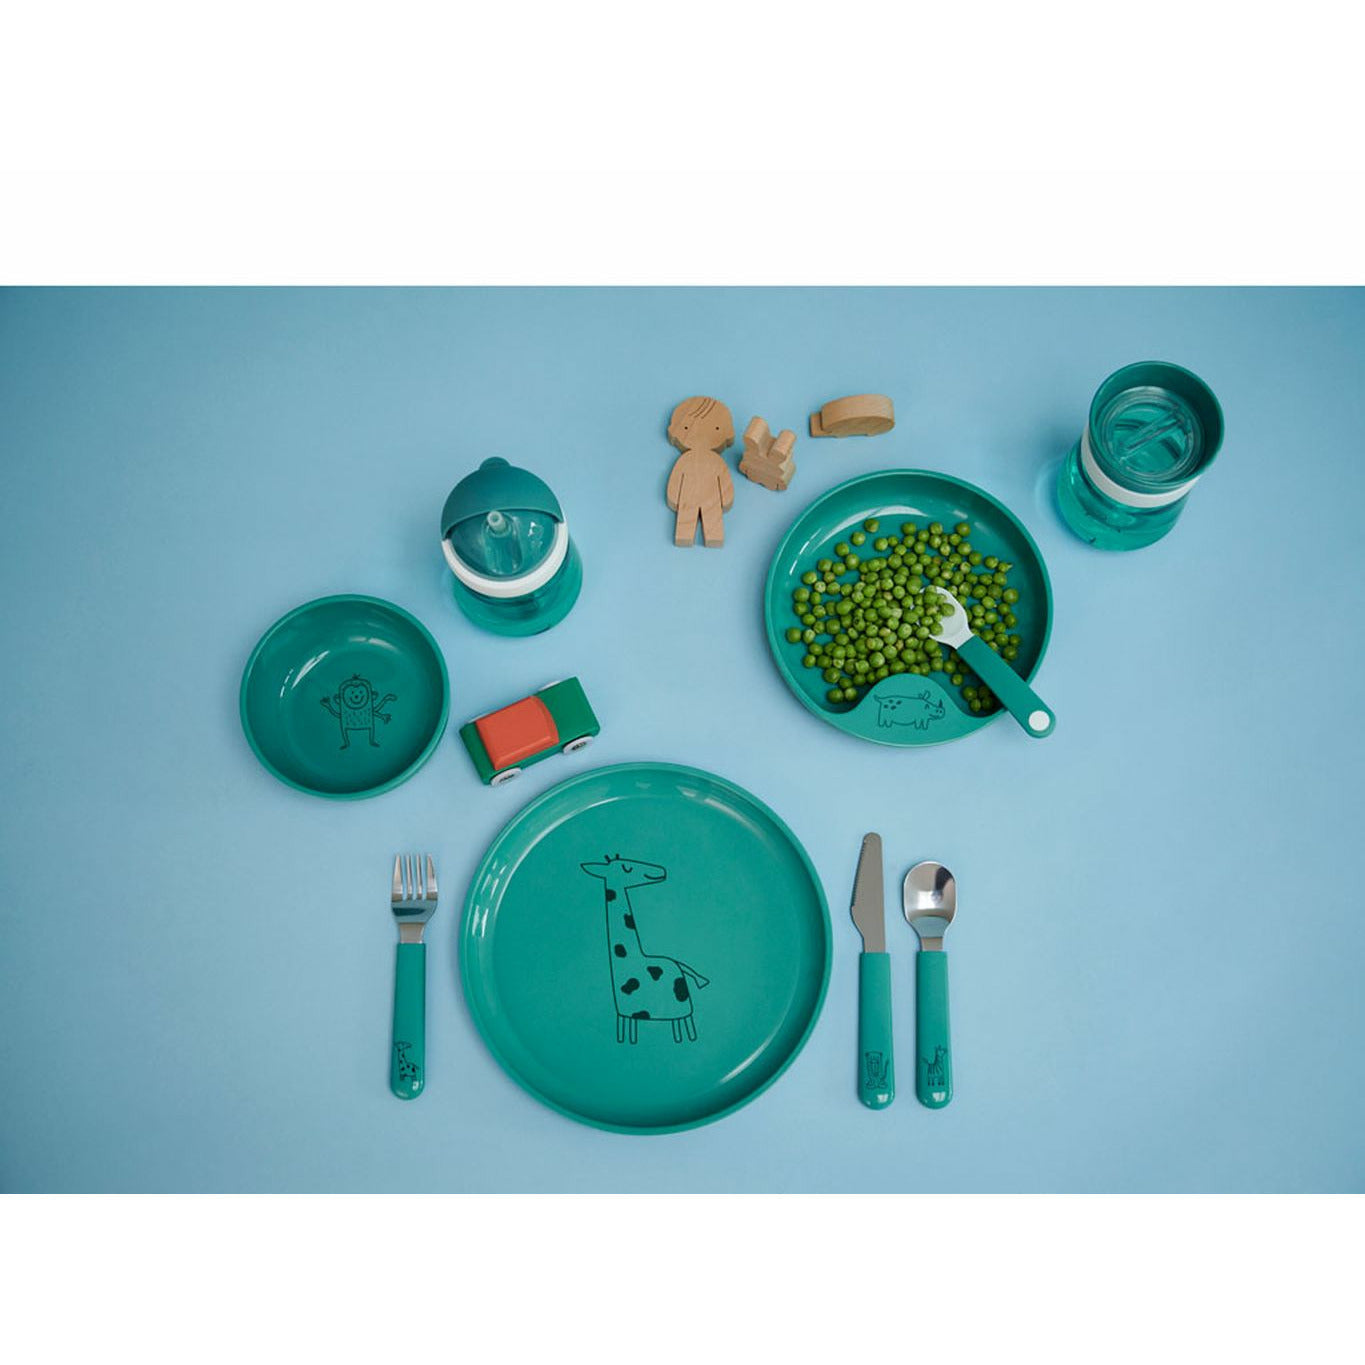 Mépal Mio Children's Cutlery Set 3 PCS, Turquoise